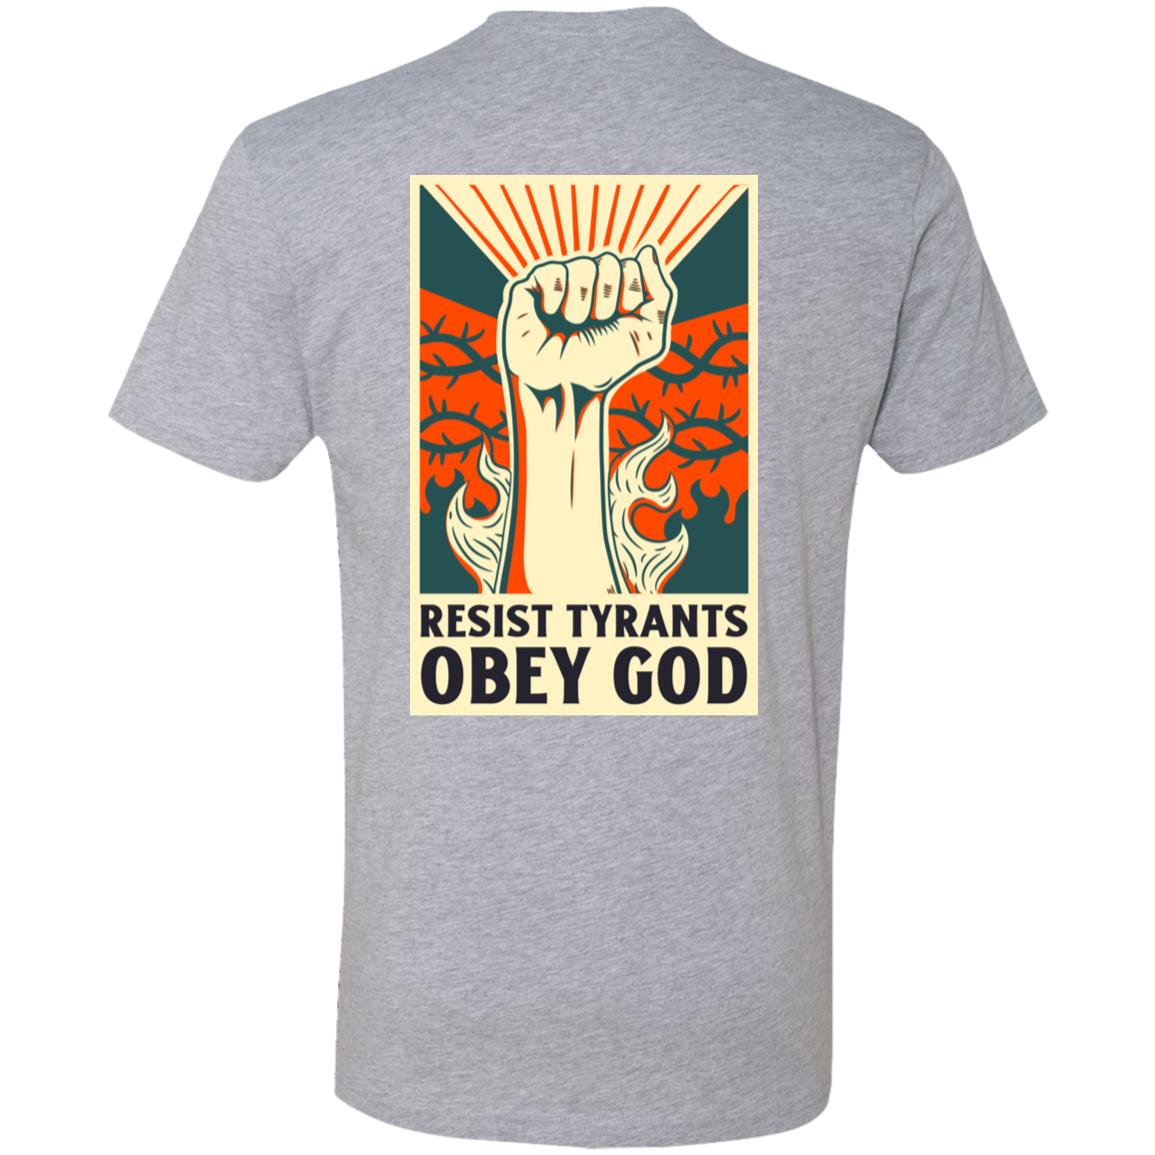 Resist Tyrants, Obey God [Alternate] (Unisex Tee)